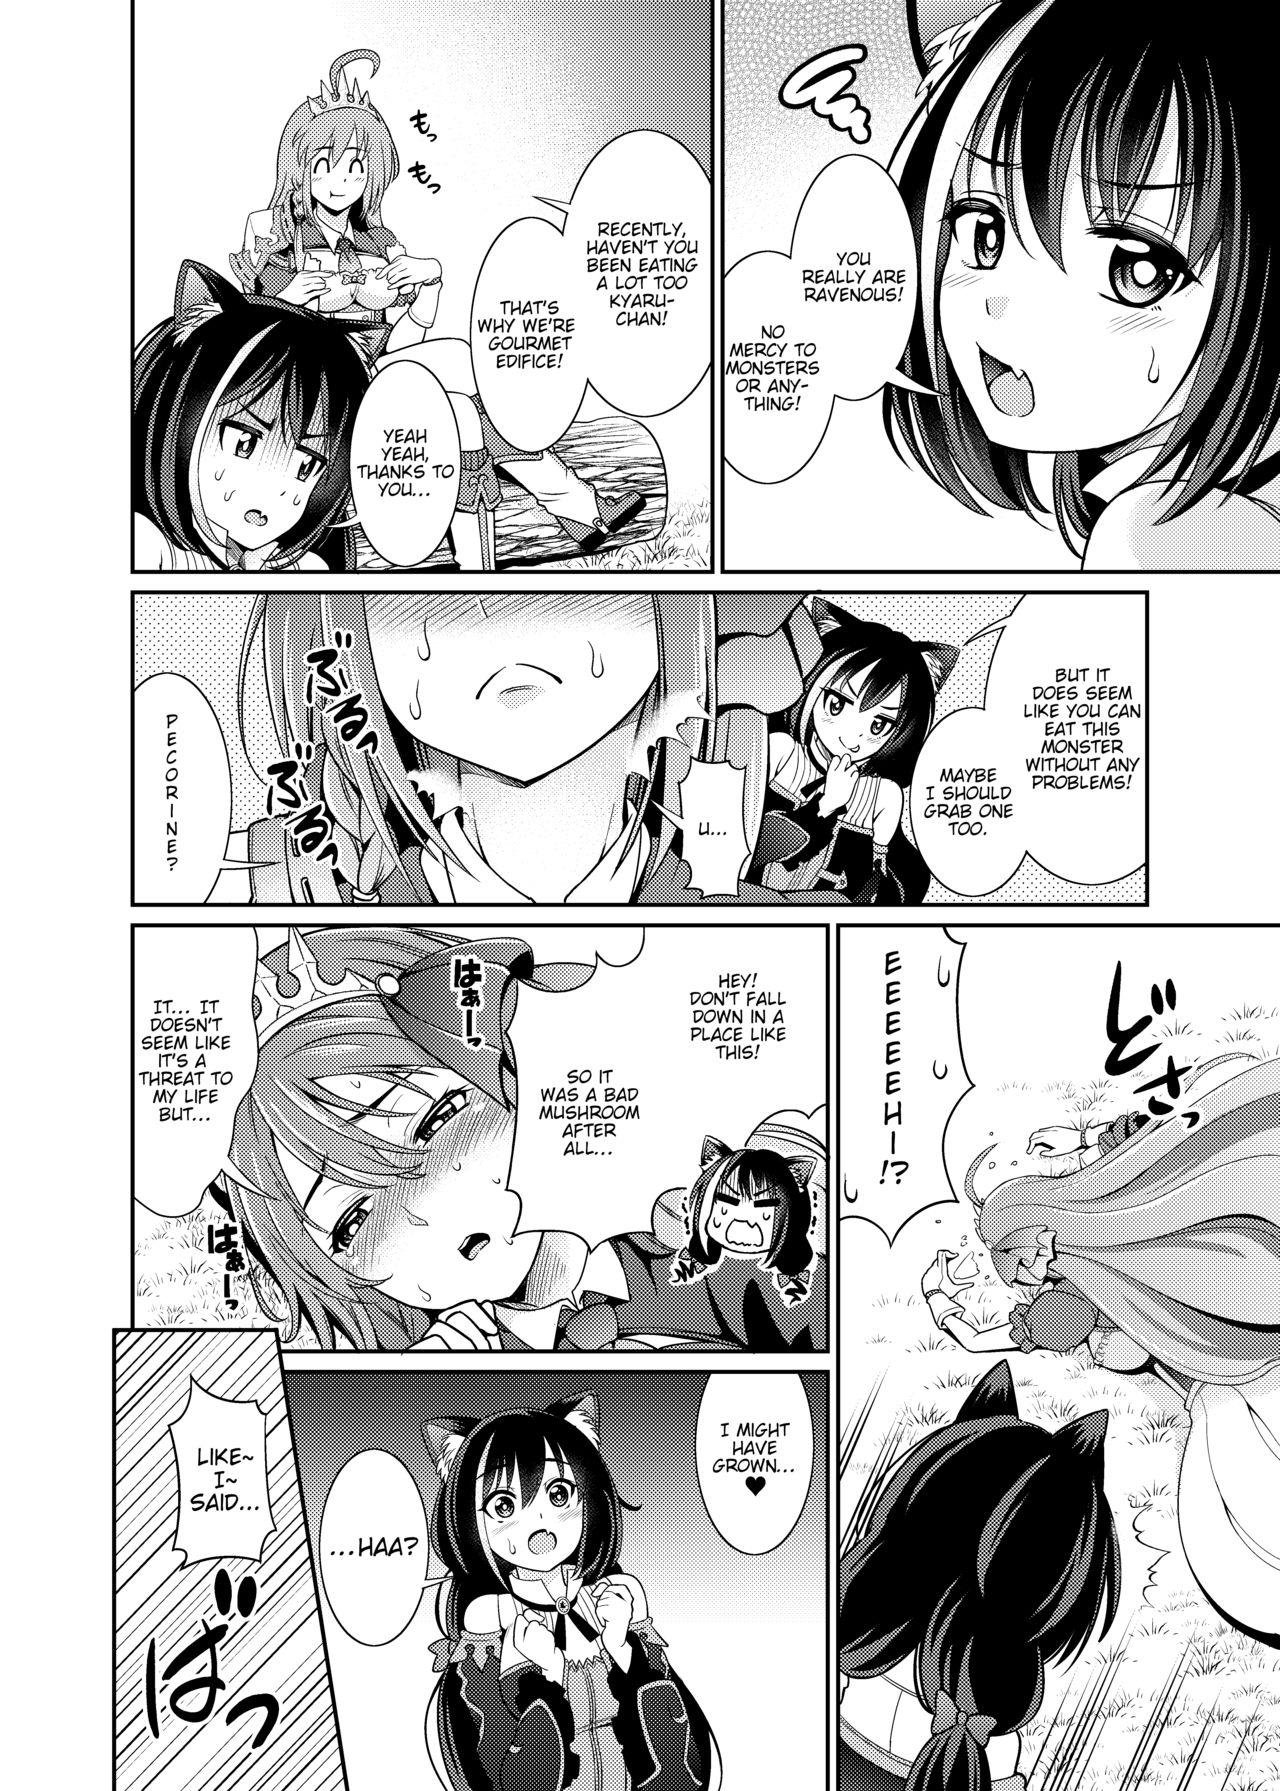 Boy Mamono nante Taberu kara... Ochinchin ga Haechau no yo!! - Princess connect Porn Star - Page 5